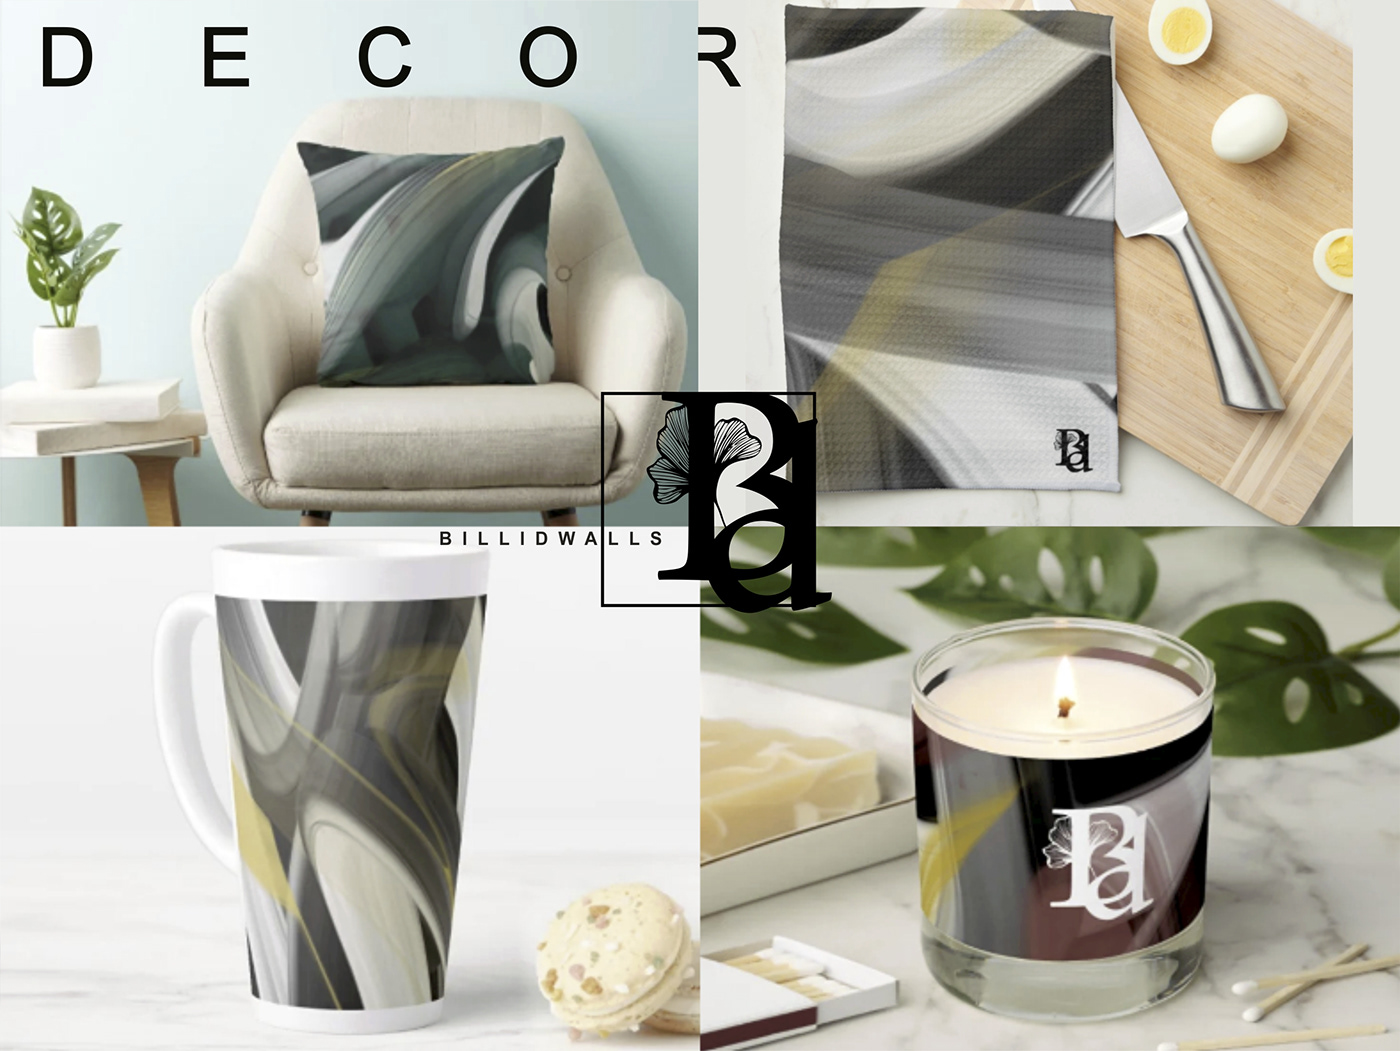 abstract decor home decor home design kitchen design dishes room design contemporary tableware ceramic